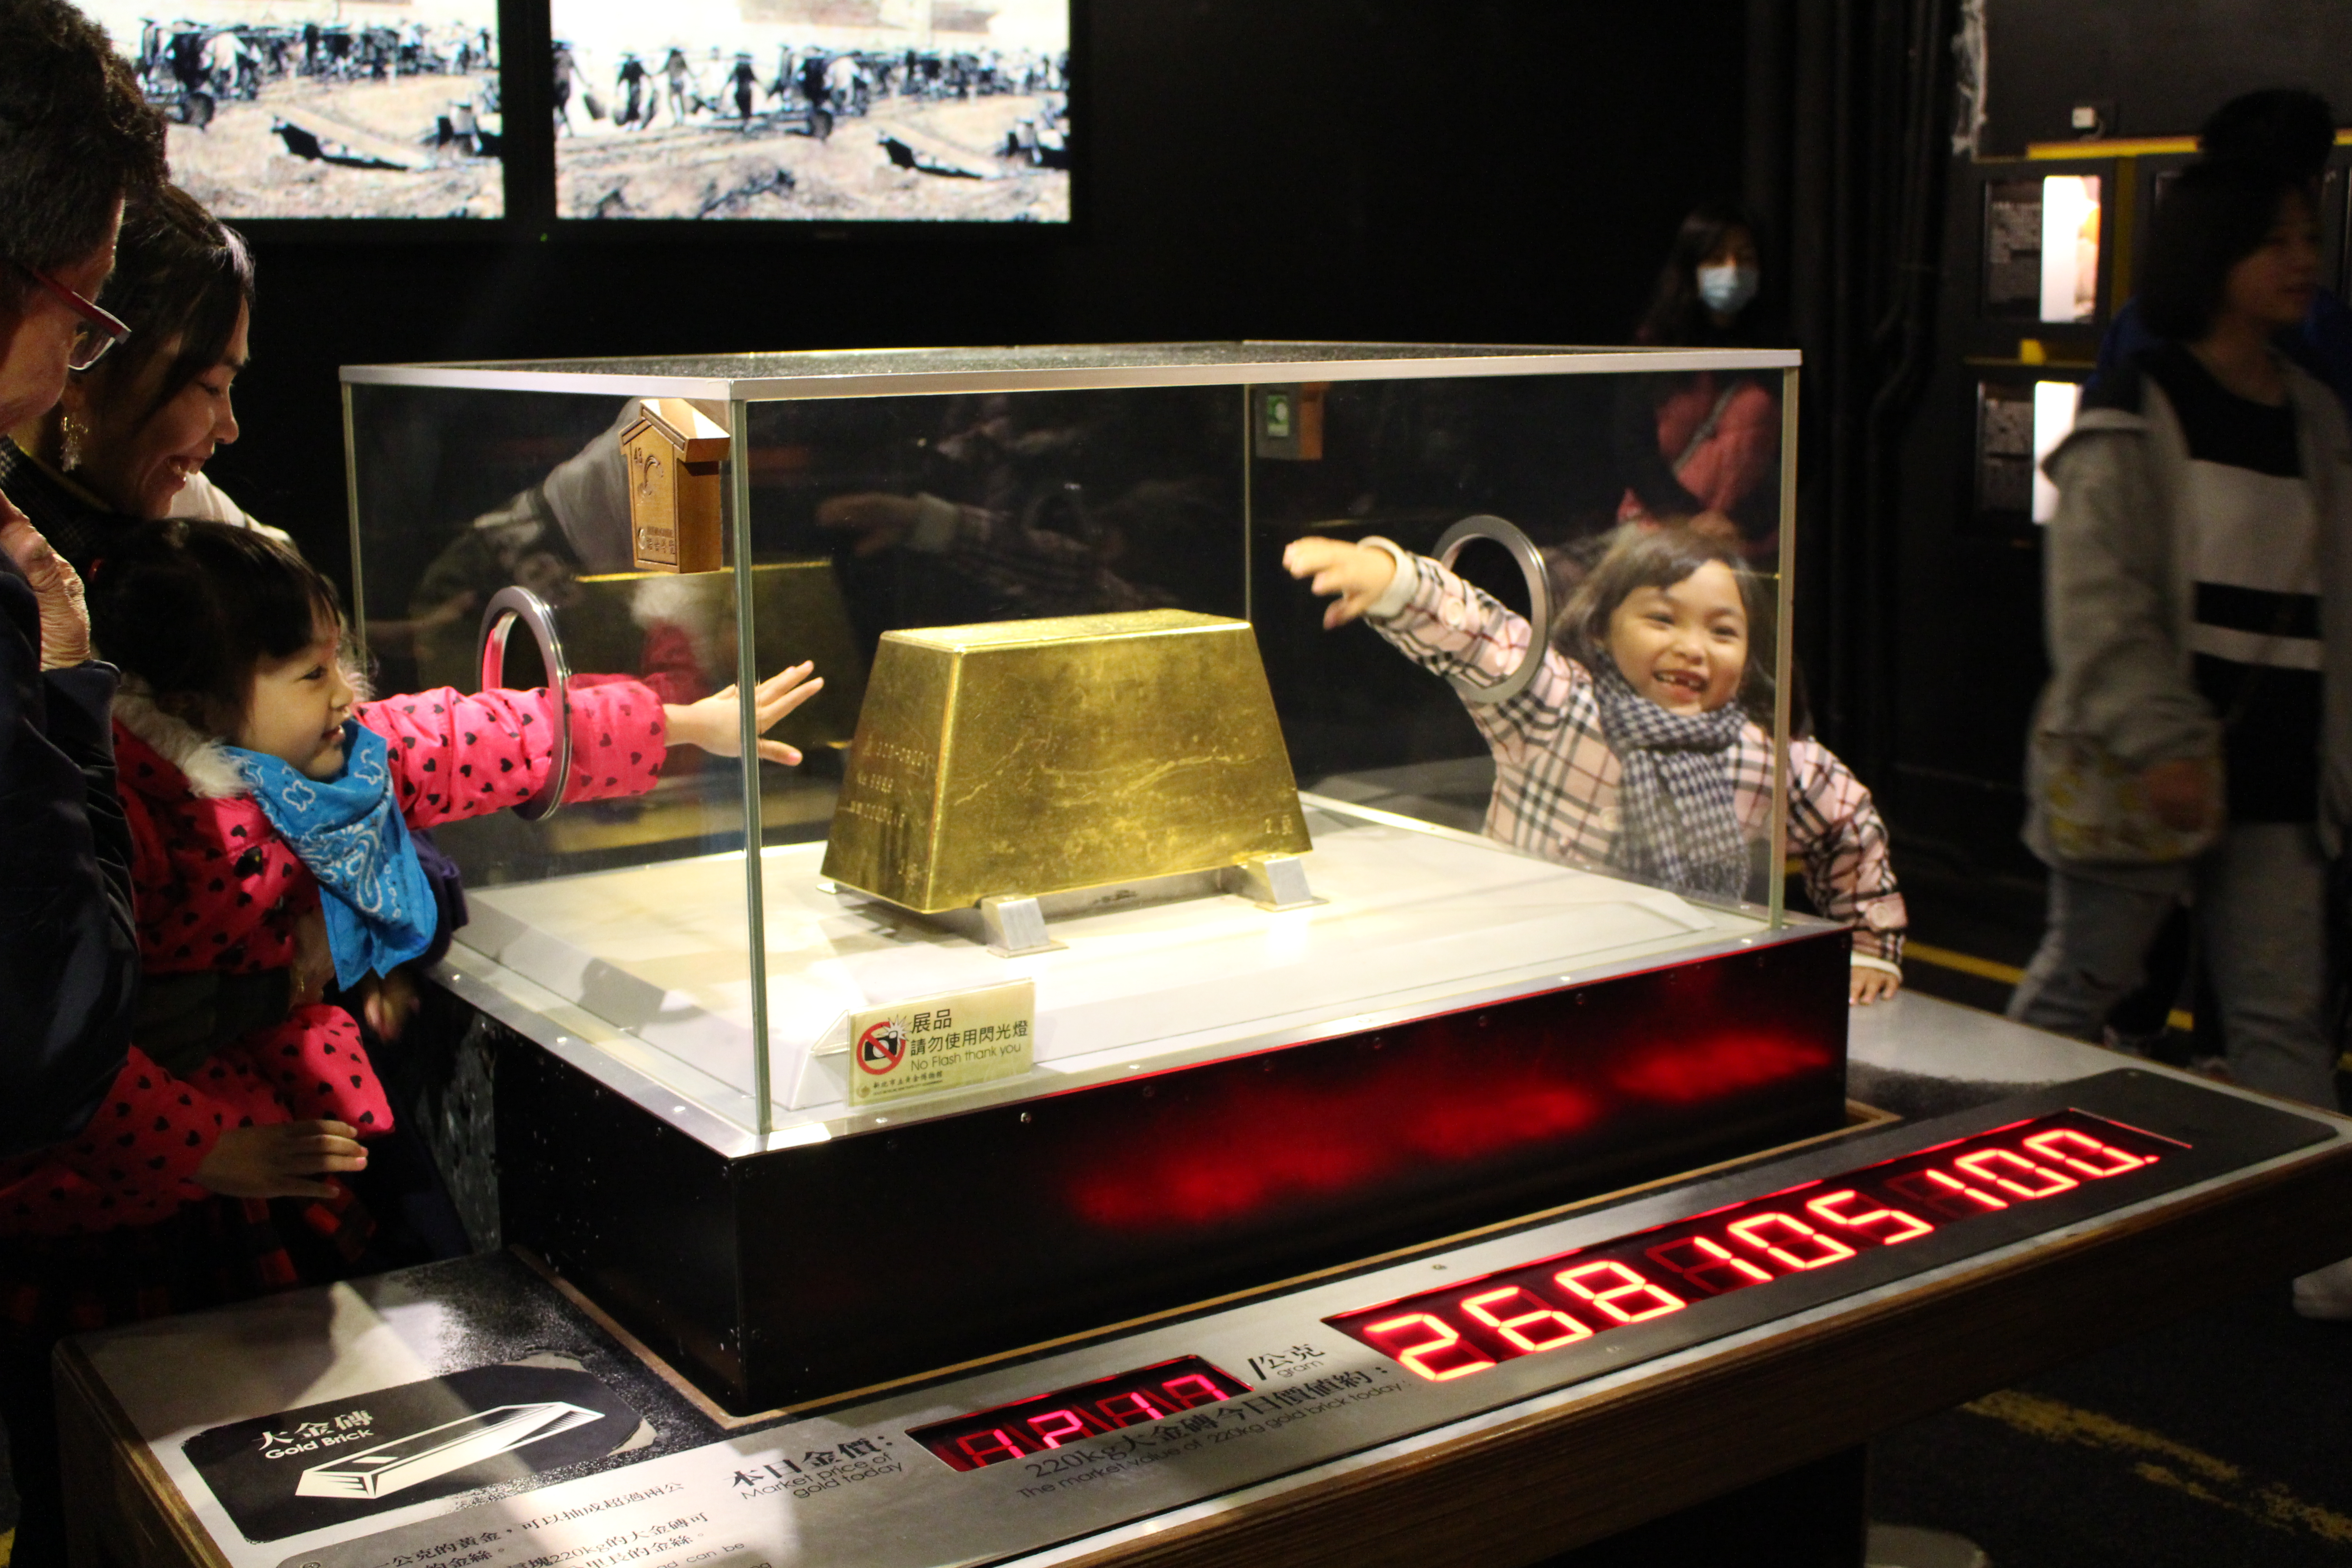 過年期間歡迎到黃金博物館沾沾220公斤大金磚的財氣讓你財源滾滾一整年